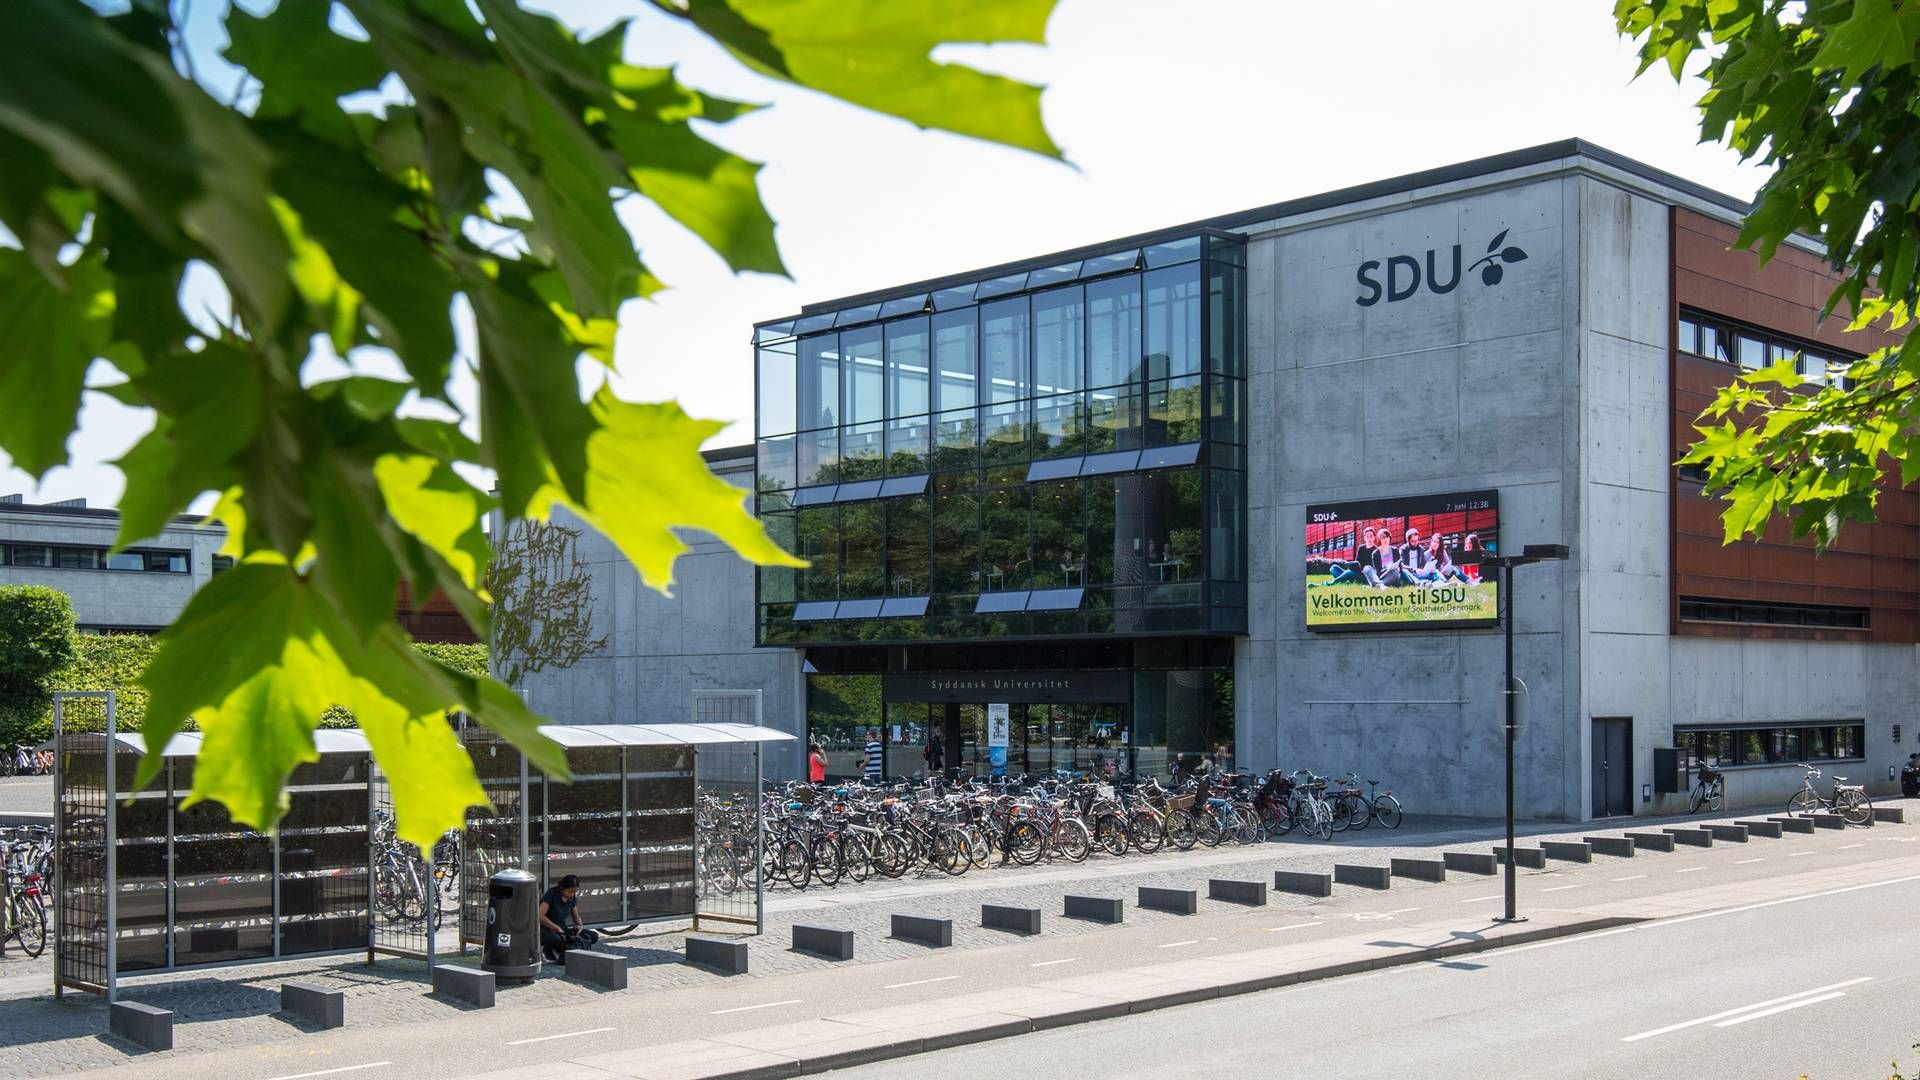 SDU har sammen med lokale kræfter i Esbjerg – herunder flere advokatfirmaer – i flere år arbejdet for at etablere en jurauddannelse i byen. | Foto: Sdu / Pr